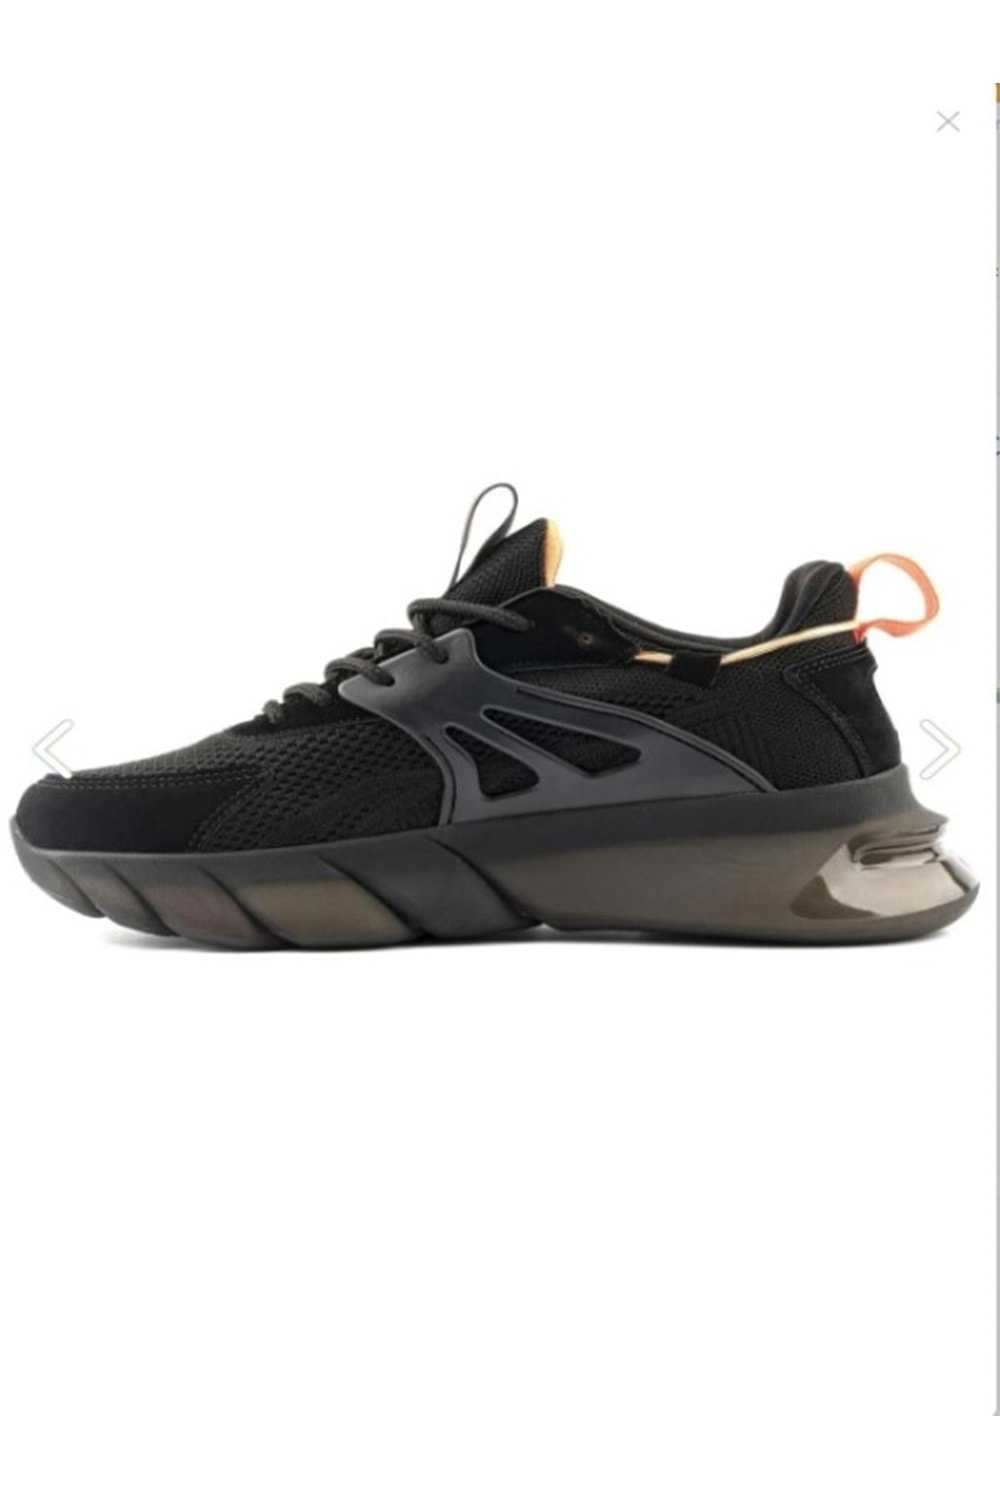 Gamelu 23Yz Care Kadın Sneakers Keten Günlük Spor Ayakkabı - Siyah - ST00206-Siyah-38